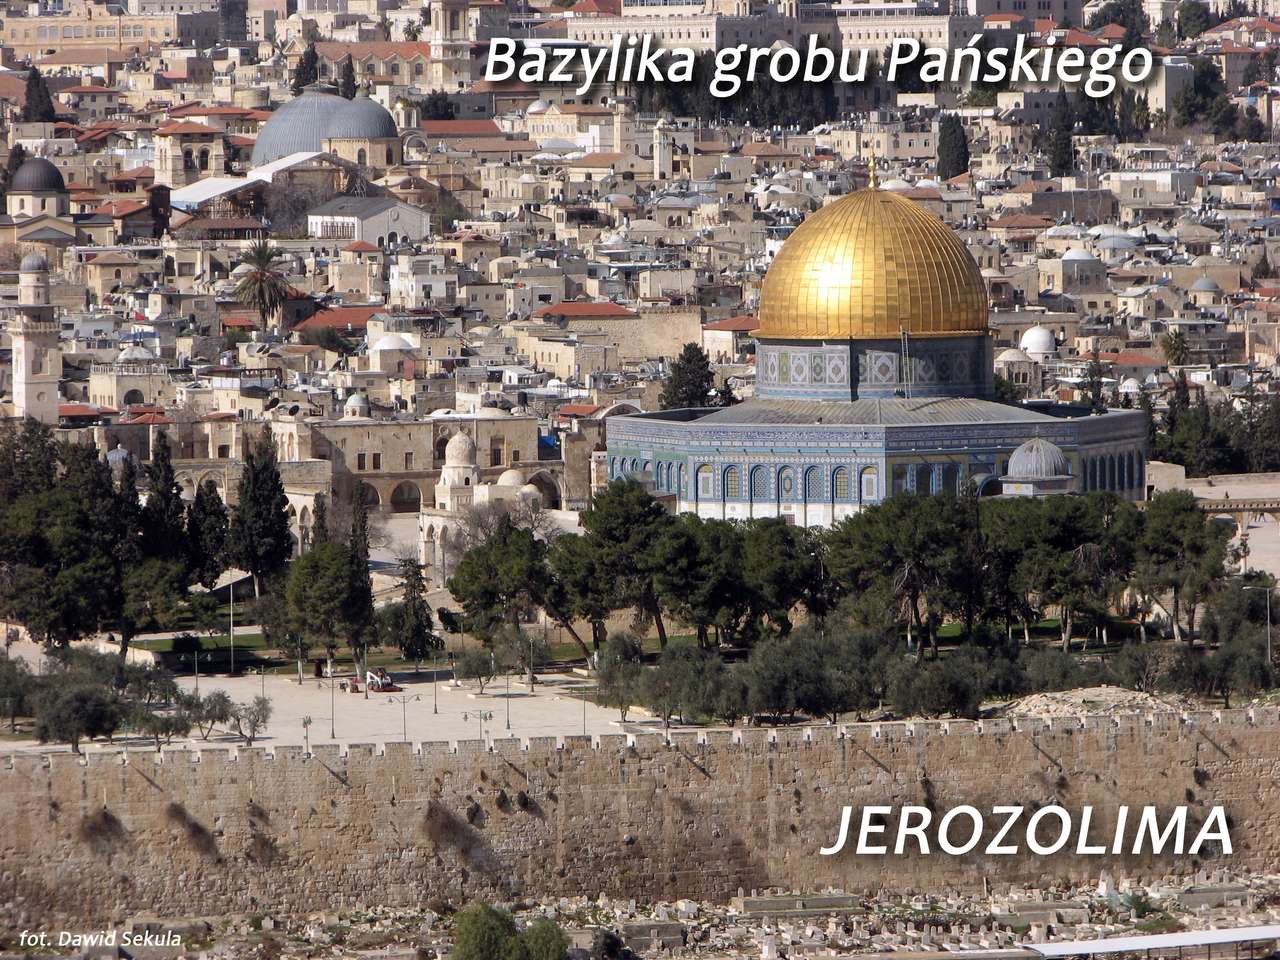 エルサレム-聖墳墓教会 オンラインパズル